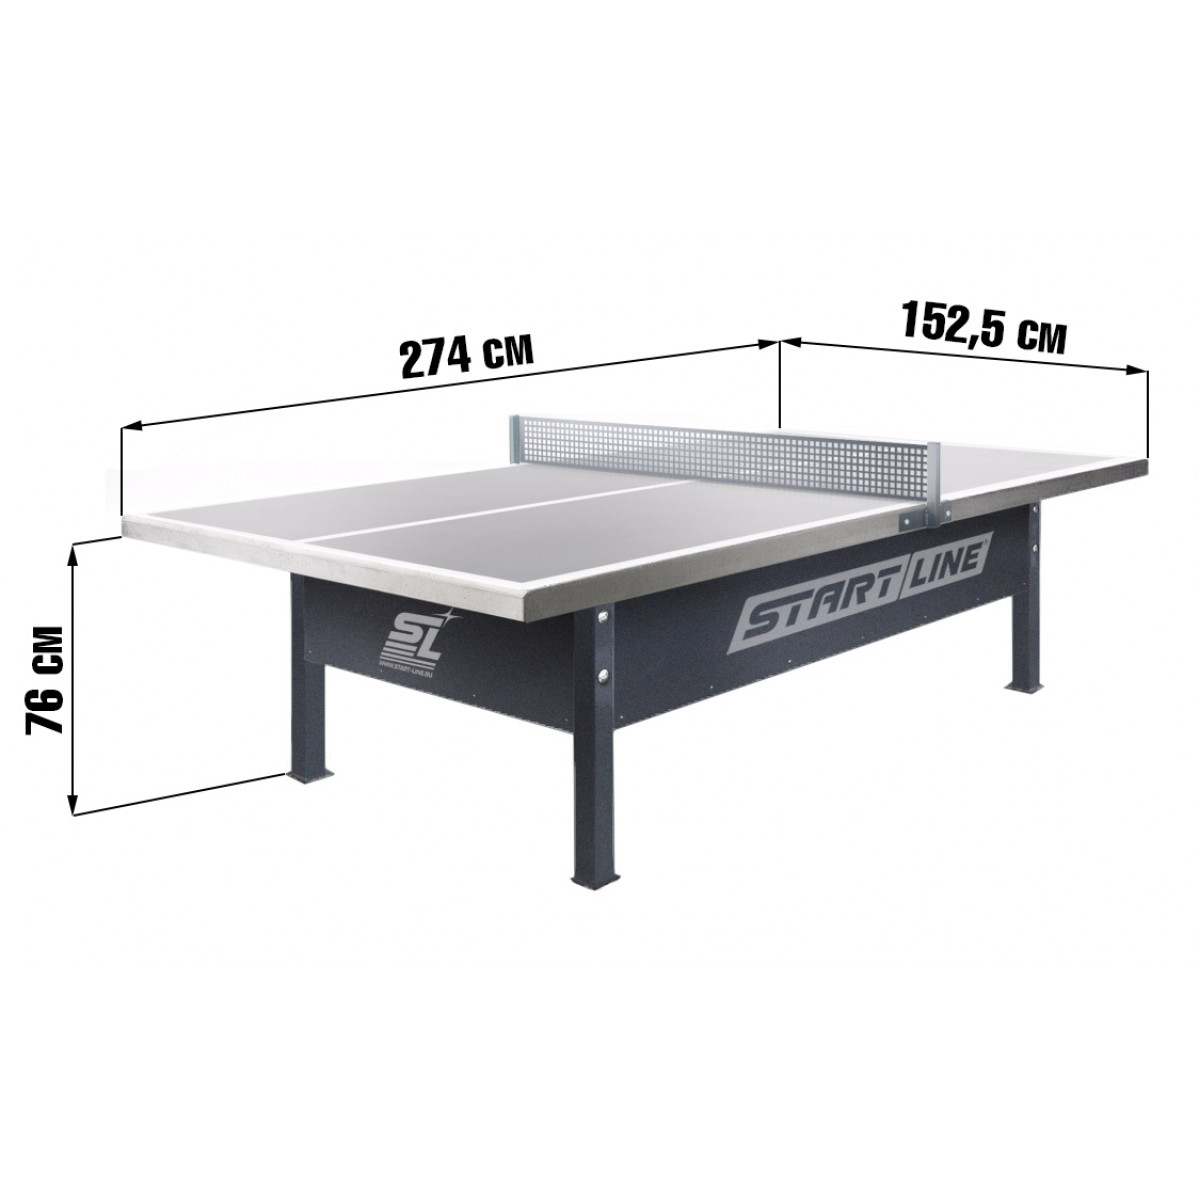 размер теннисного стола для пинг